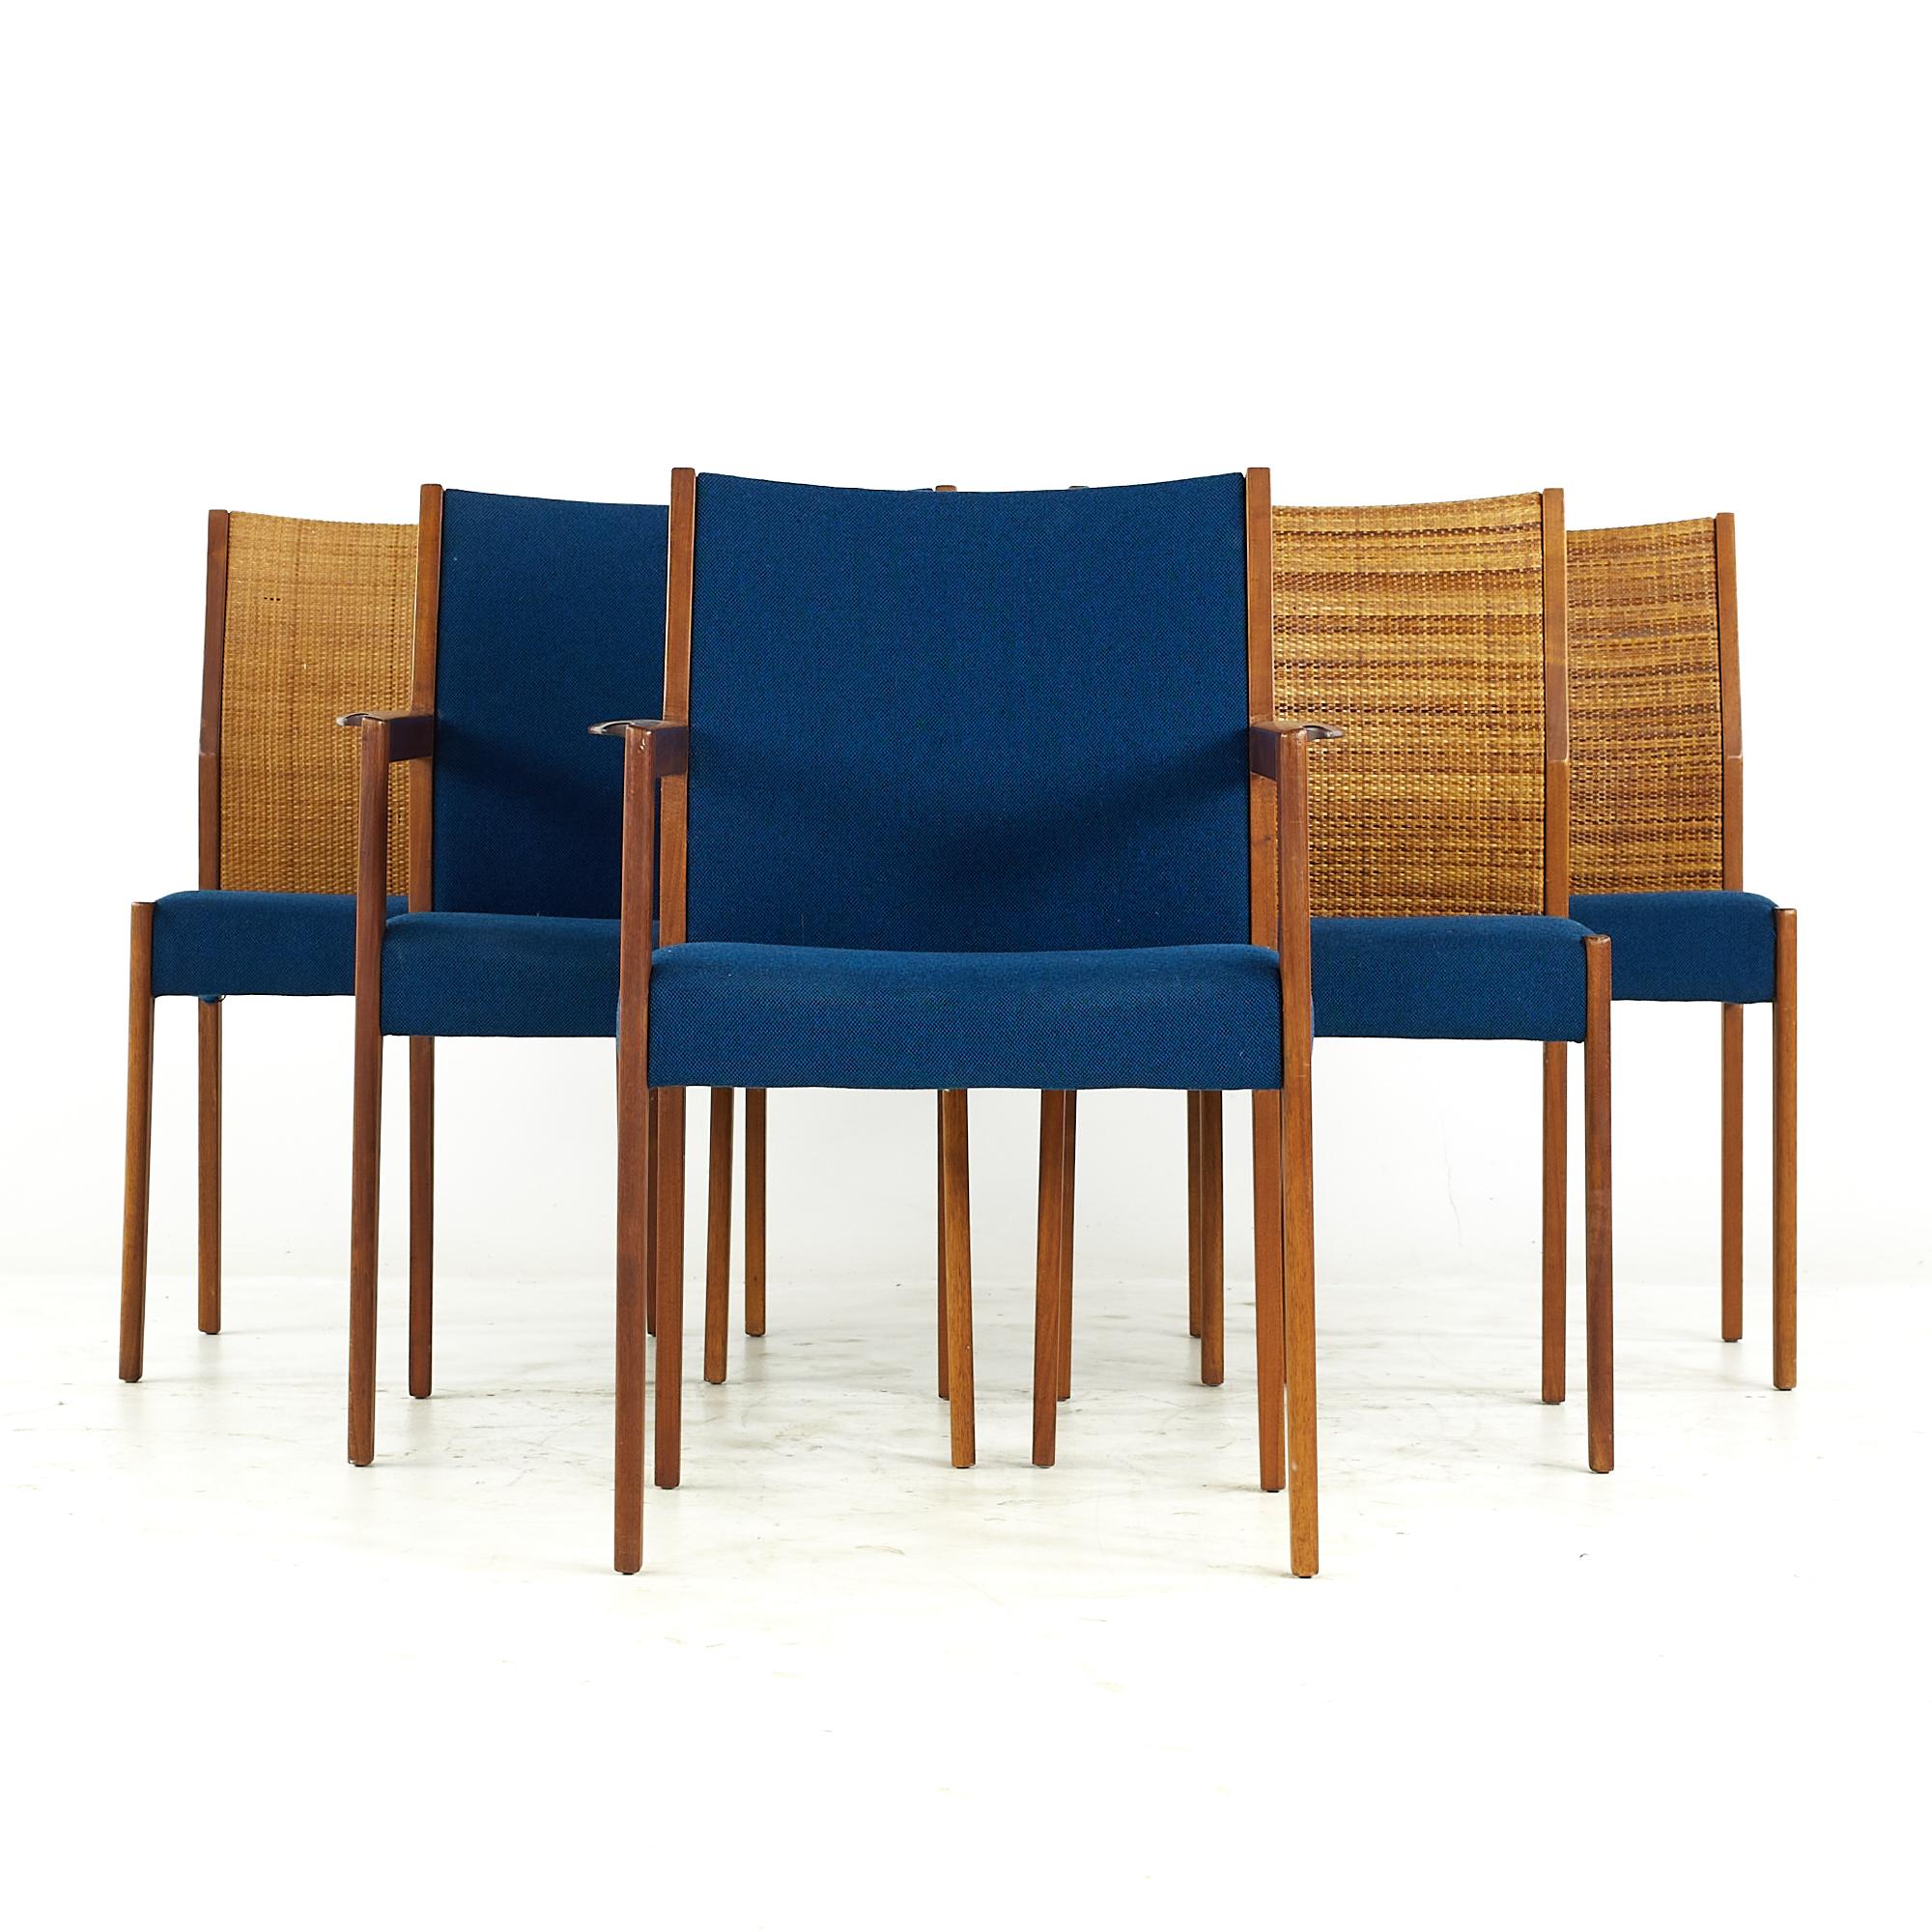 Jens Risom Mid Century Cane and Walnut Dining Chairs - Set of 6

Chaque chaise sans accoudoir mesure : 19,5 de large x 18,25 de profond x 34,5 de haut, avec une hauteur d'assise de 18,5 pouces.
Chaque fauteuil capitaine mesure : 24 de large x 18.25